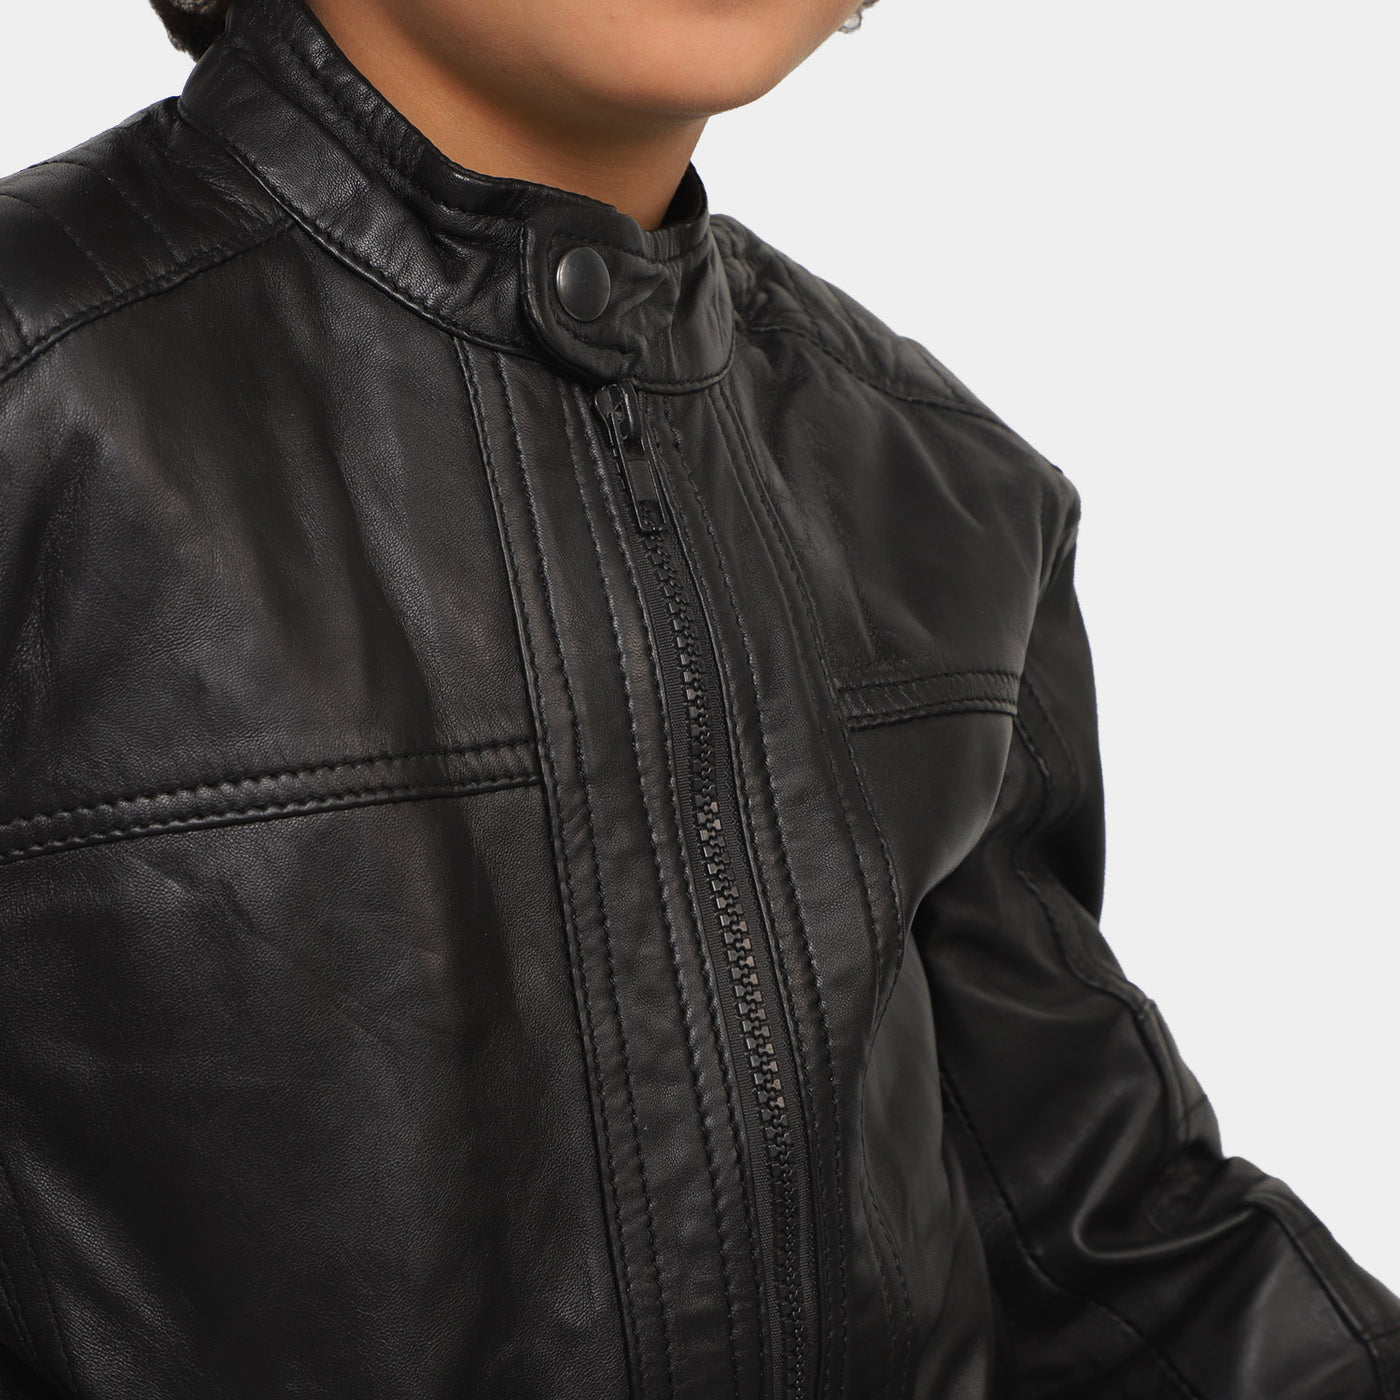 Boys Genuine  Sheep Leather Jacket Biker Sleeves-BLACK